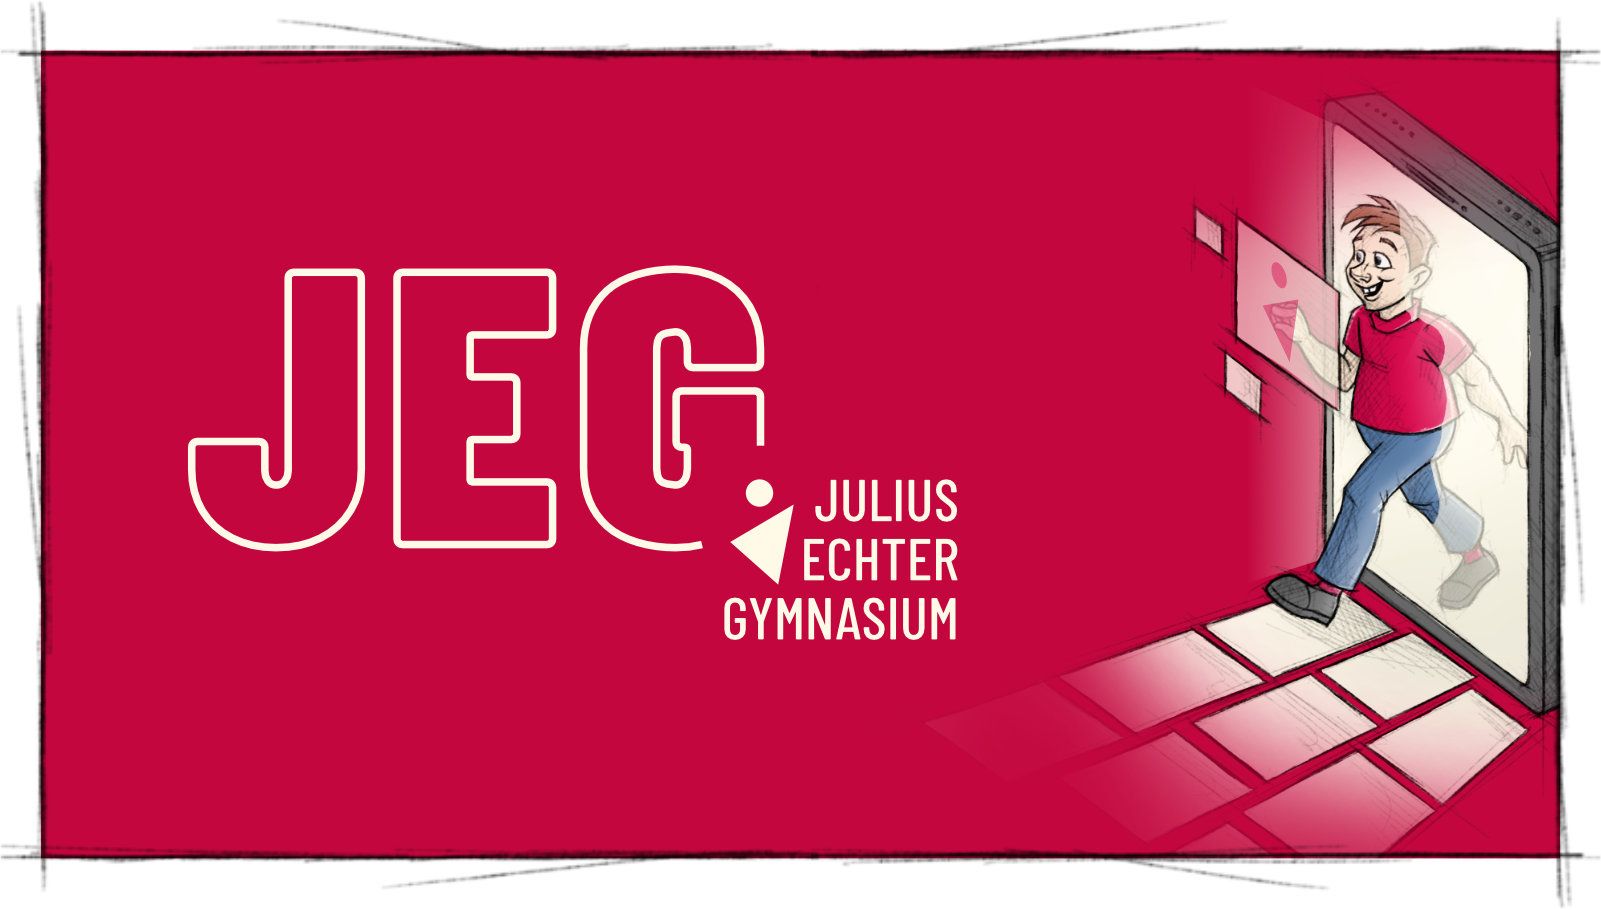 Das Titelbild der Projektvorstellung für Corporate Design für JEG Julius Echter Gymnasium zeigt eine skizzenhafte Cartoon Illustration von einem Schüler, der durch ein Smartphone Display spaziert, auf der rechten Seite